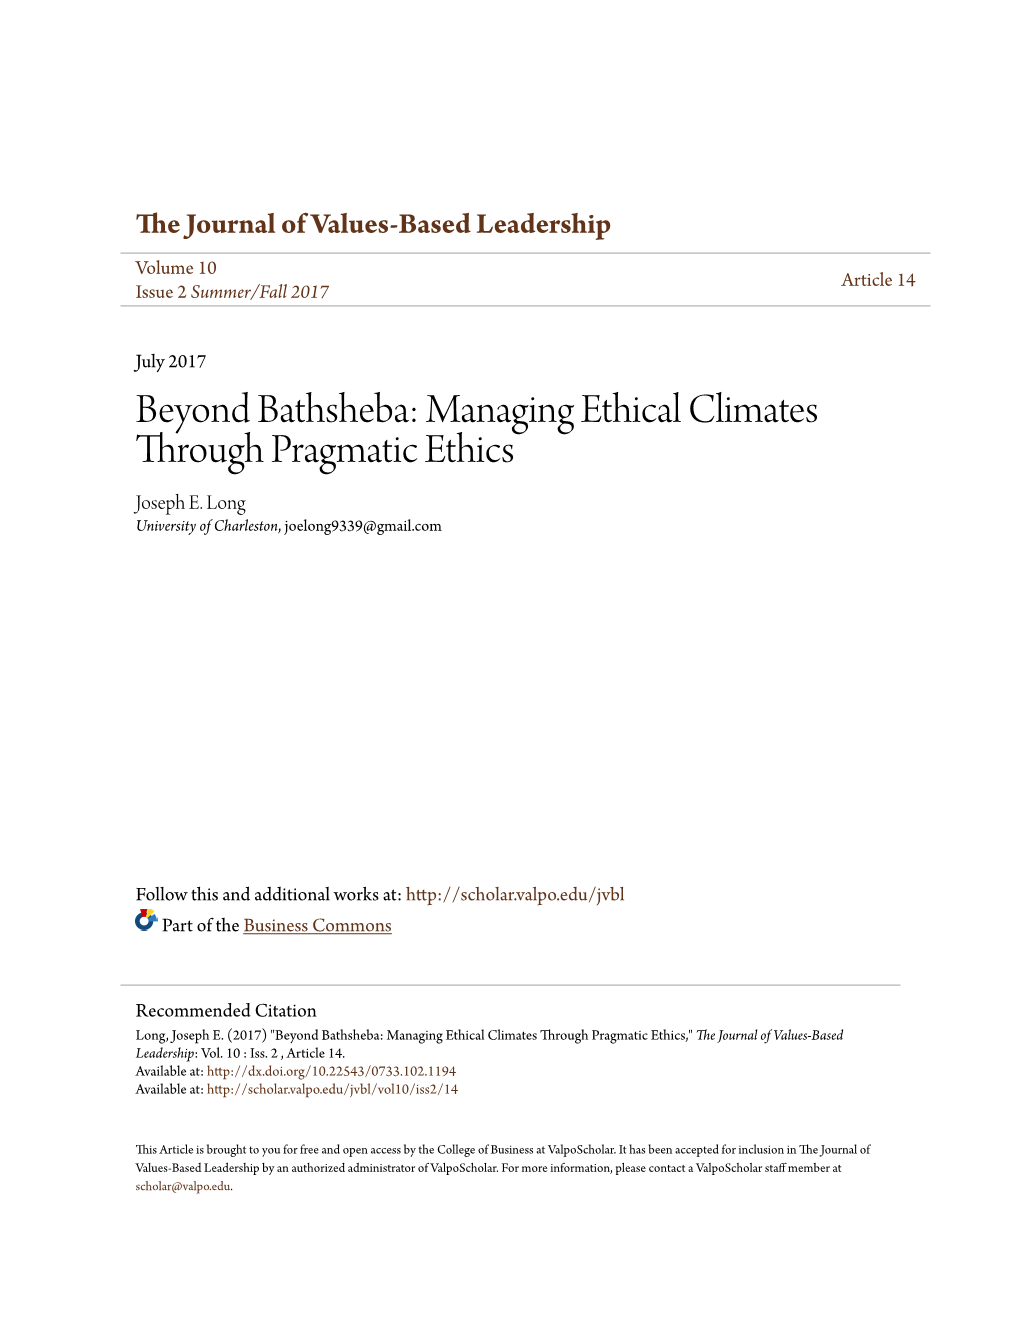 Beyond Bathsheba: Managing Ethical Climates Through Pragmatic Ethics Joseph E